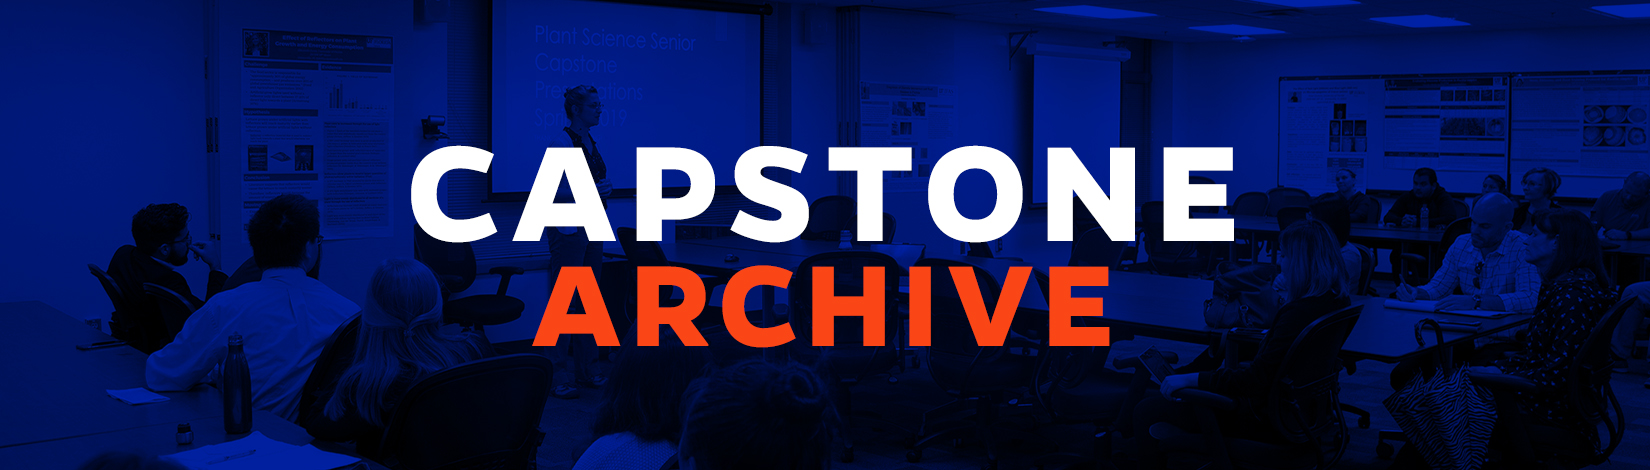 capstone archive